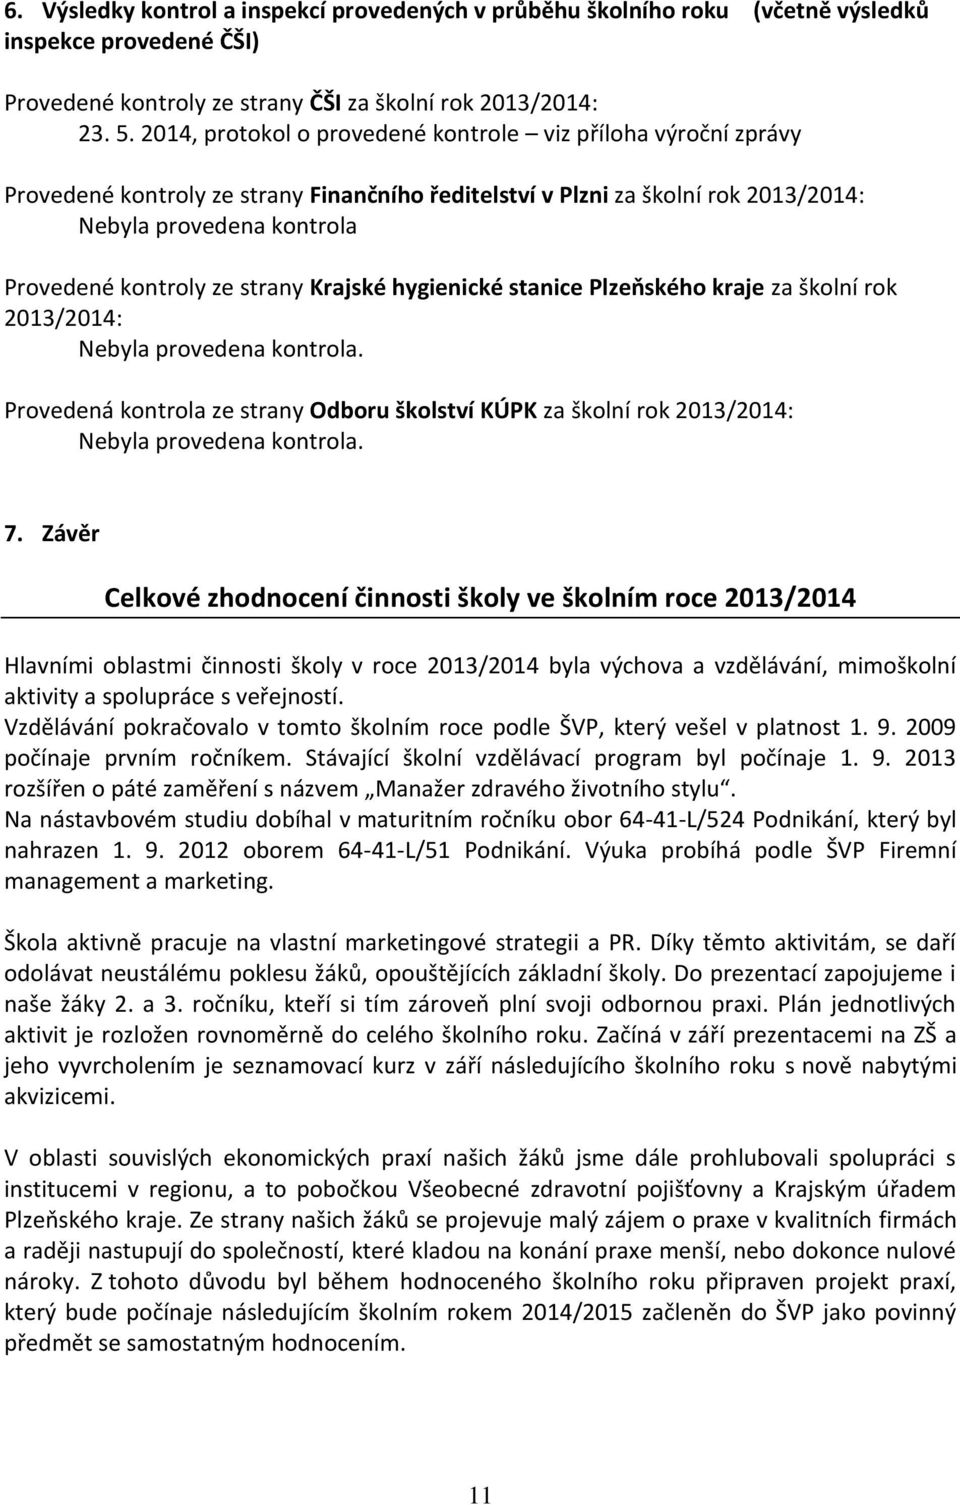 strany Krajské hygienické stanice Plzeňského kraje za školní rok 2013/2014: Nebyla provedena kontrola.